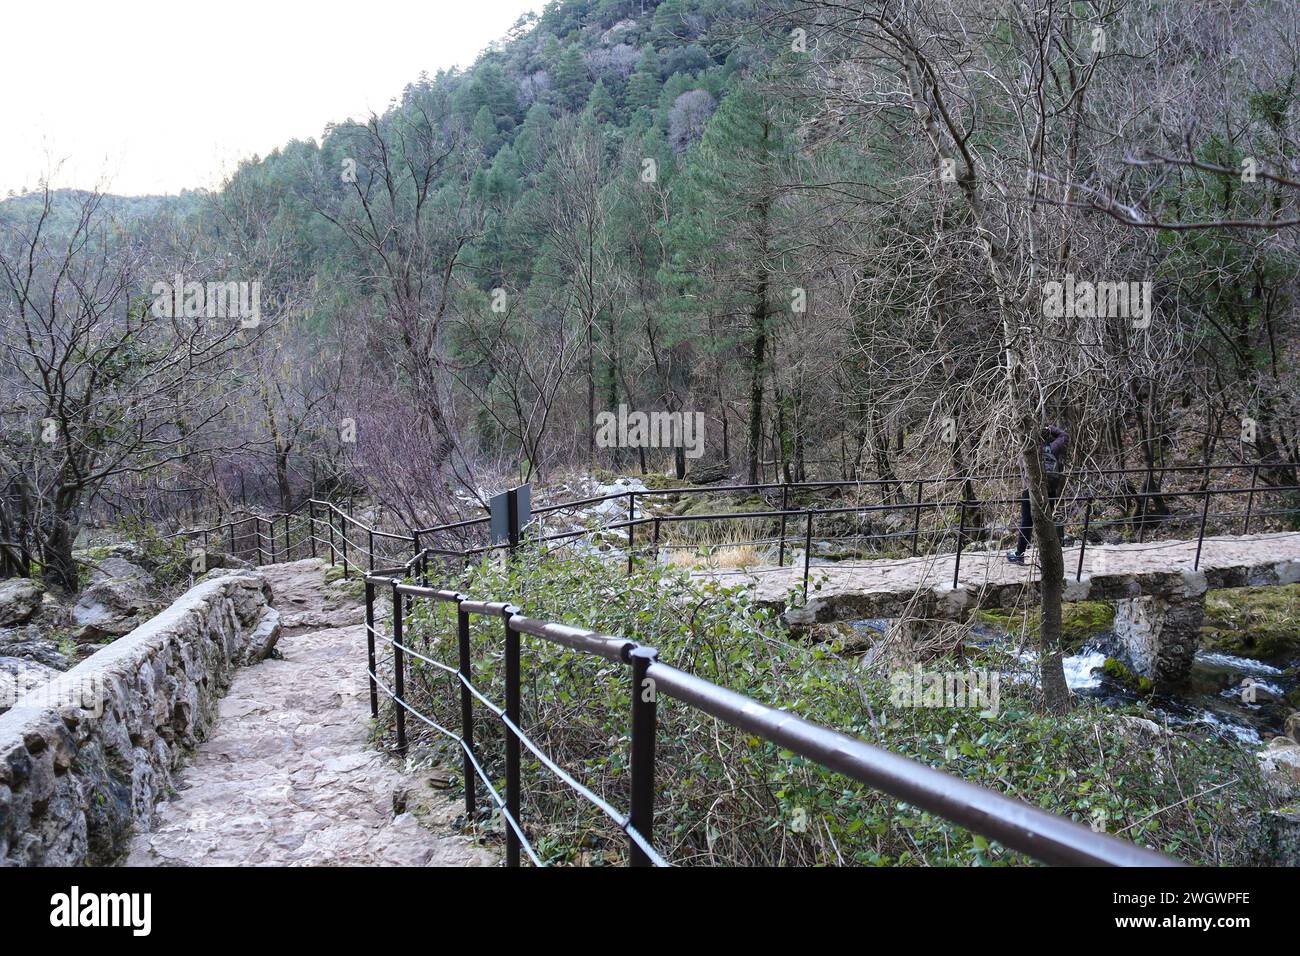 Hiking route in Nacimiento del Rio Mundo in Sierra de Alcaraz, Albacete province, Spain Stock Photo